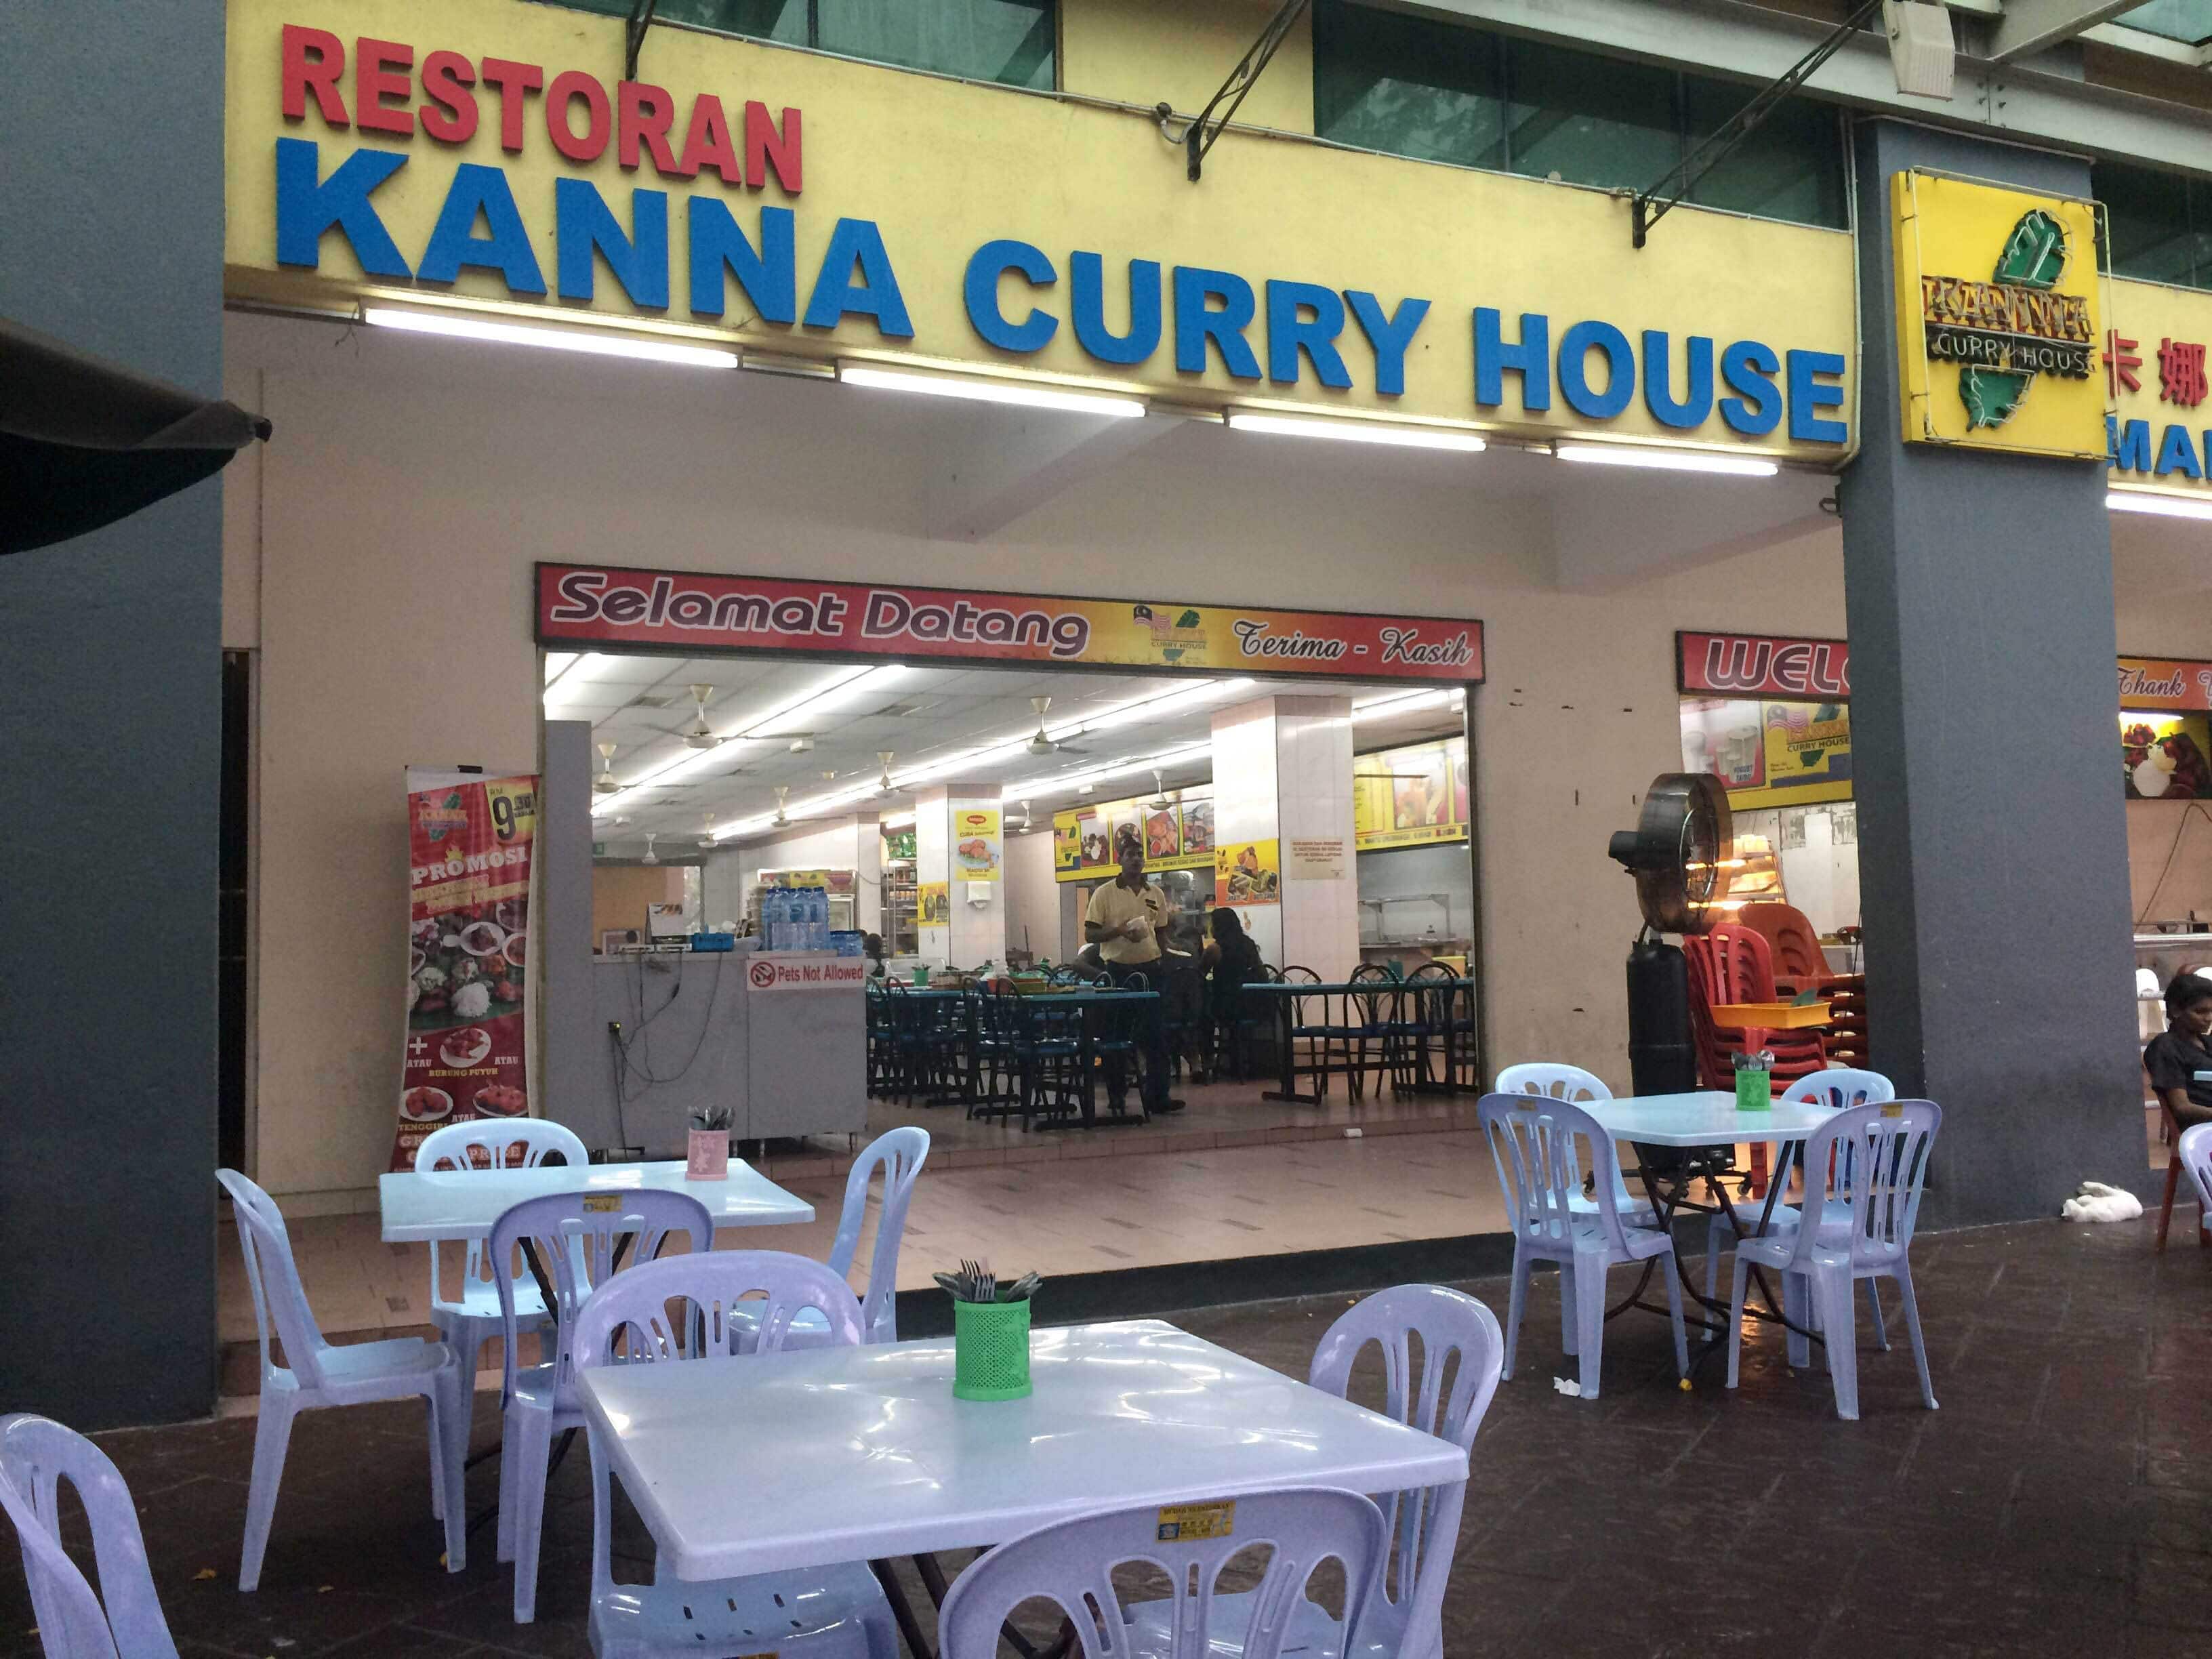 House kepong curry kanna KANNA CURRY